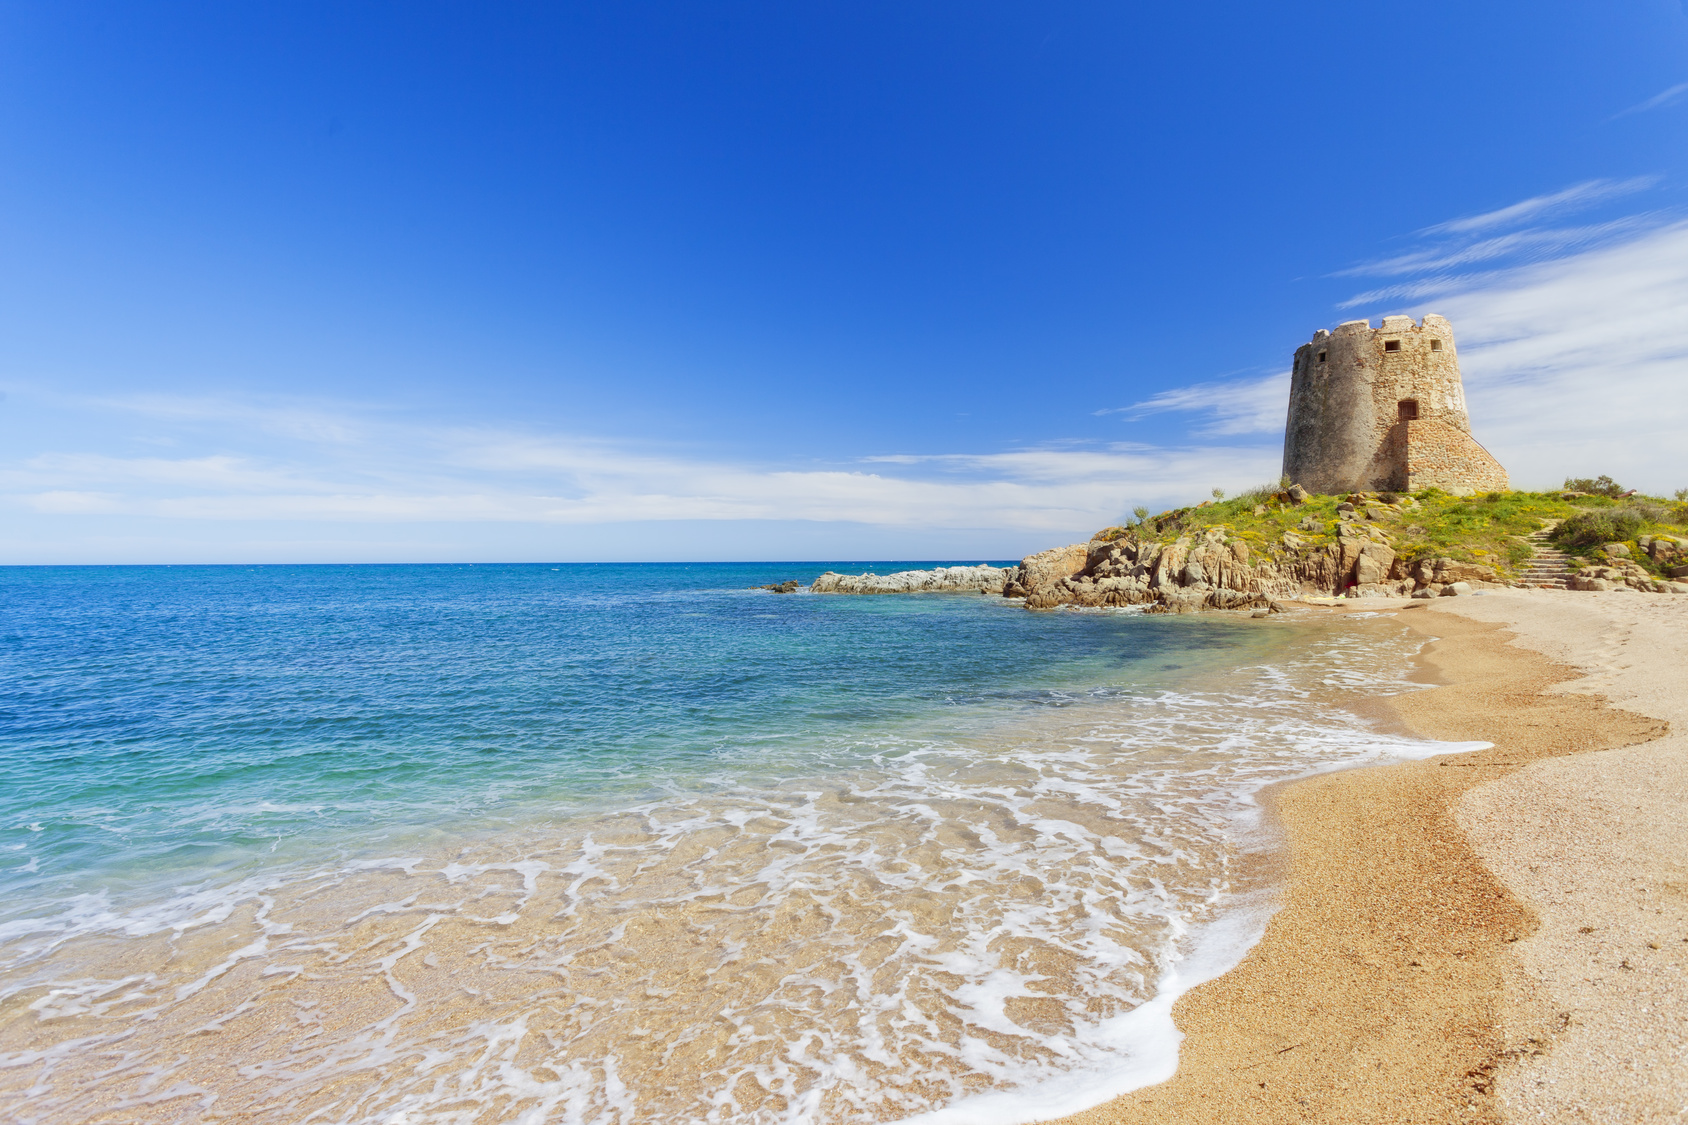 La spiaggia di Barisardo con la sua omonima torre